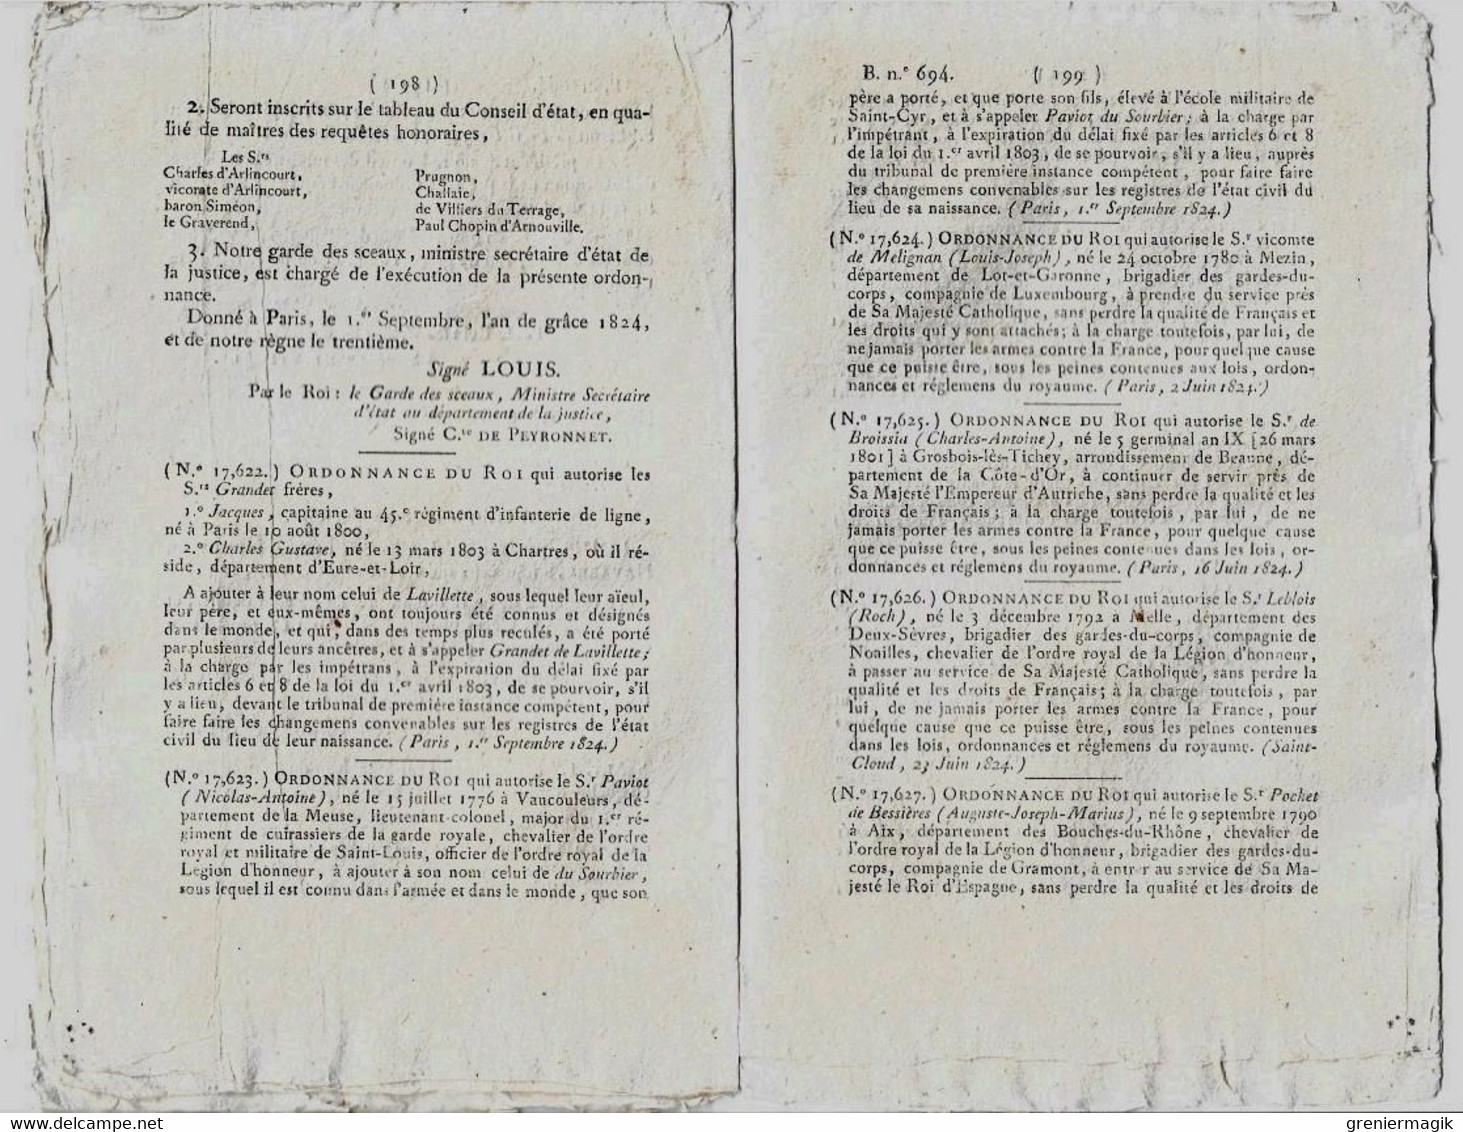 Bulletin des Lois N°694 1824 Membres du Conseil d'amirauté (Missiessy...)/Comte d'Augier Toulon/Frayssinous Hermopolis